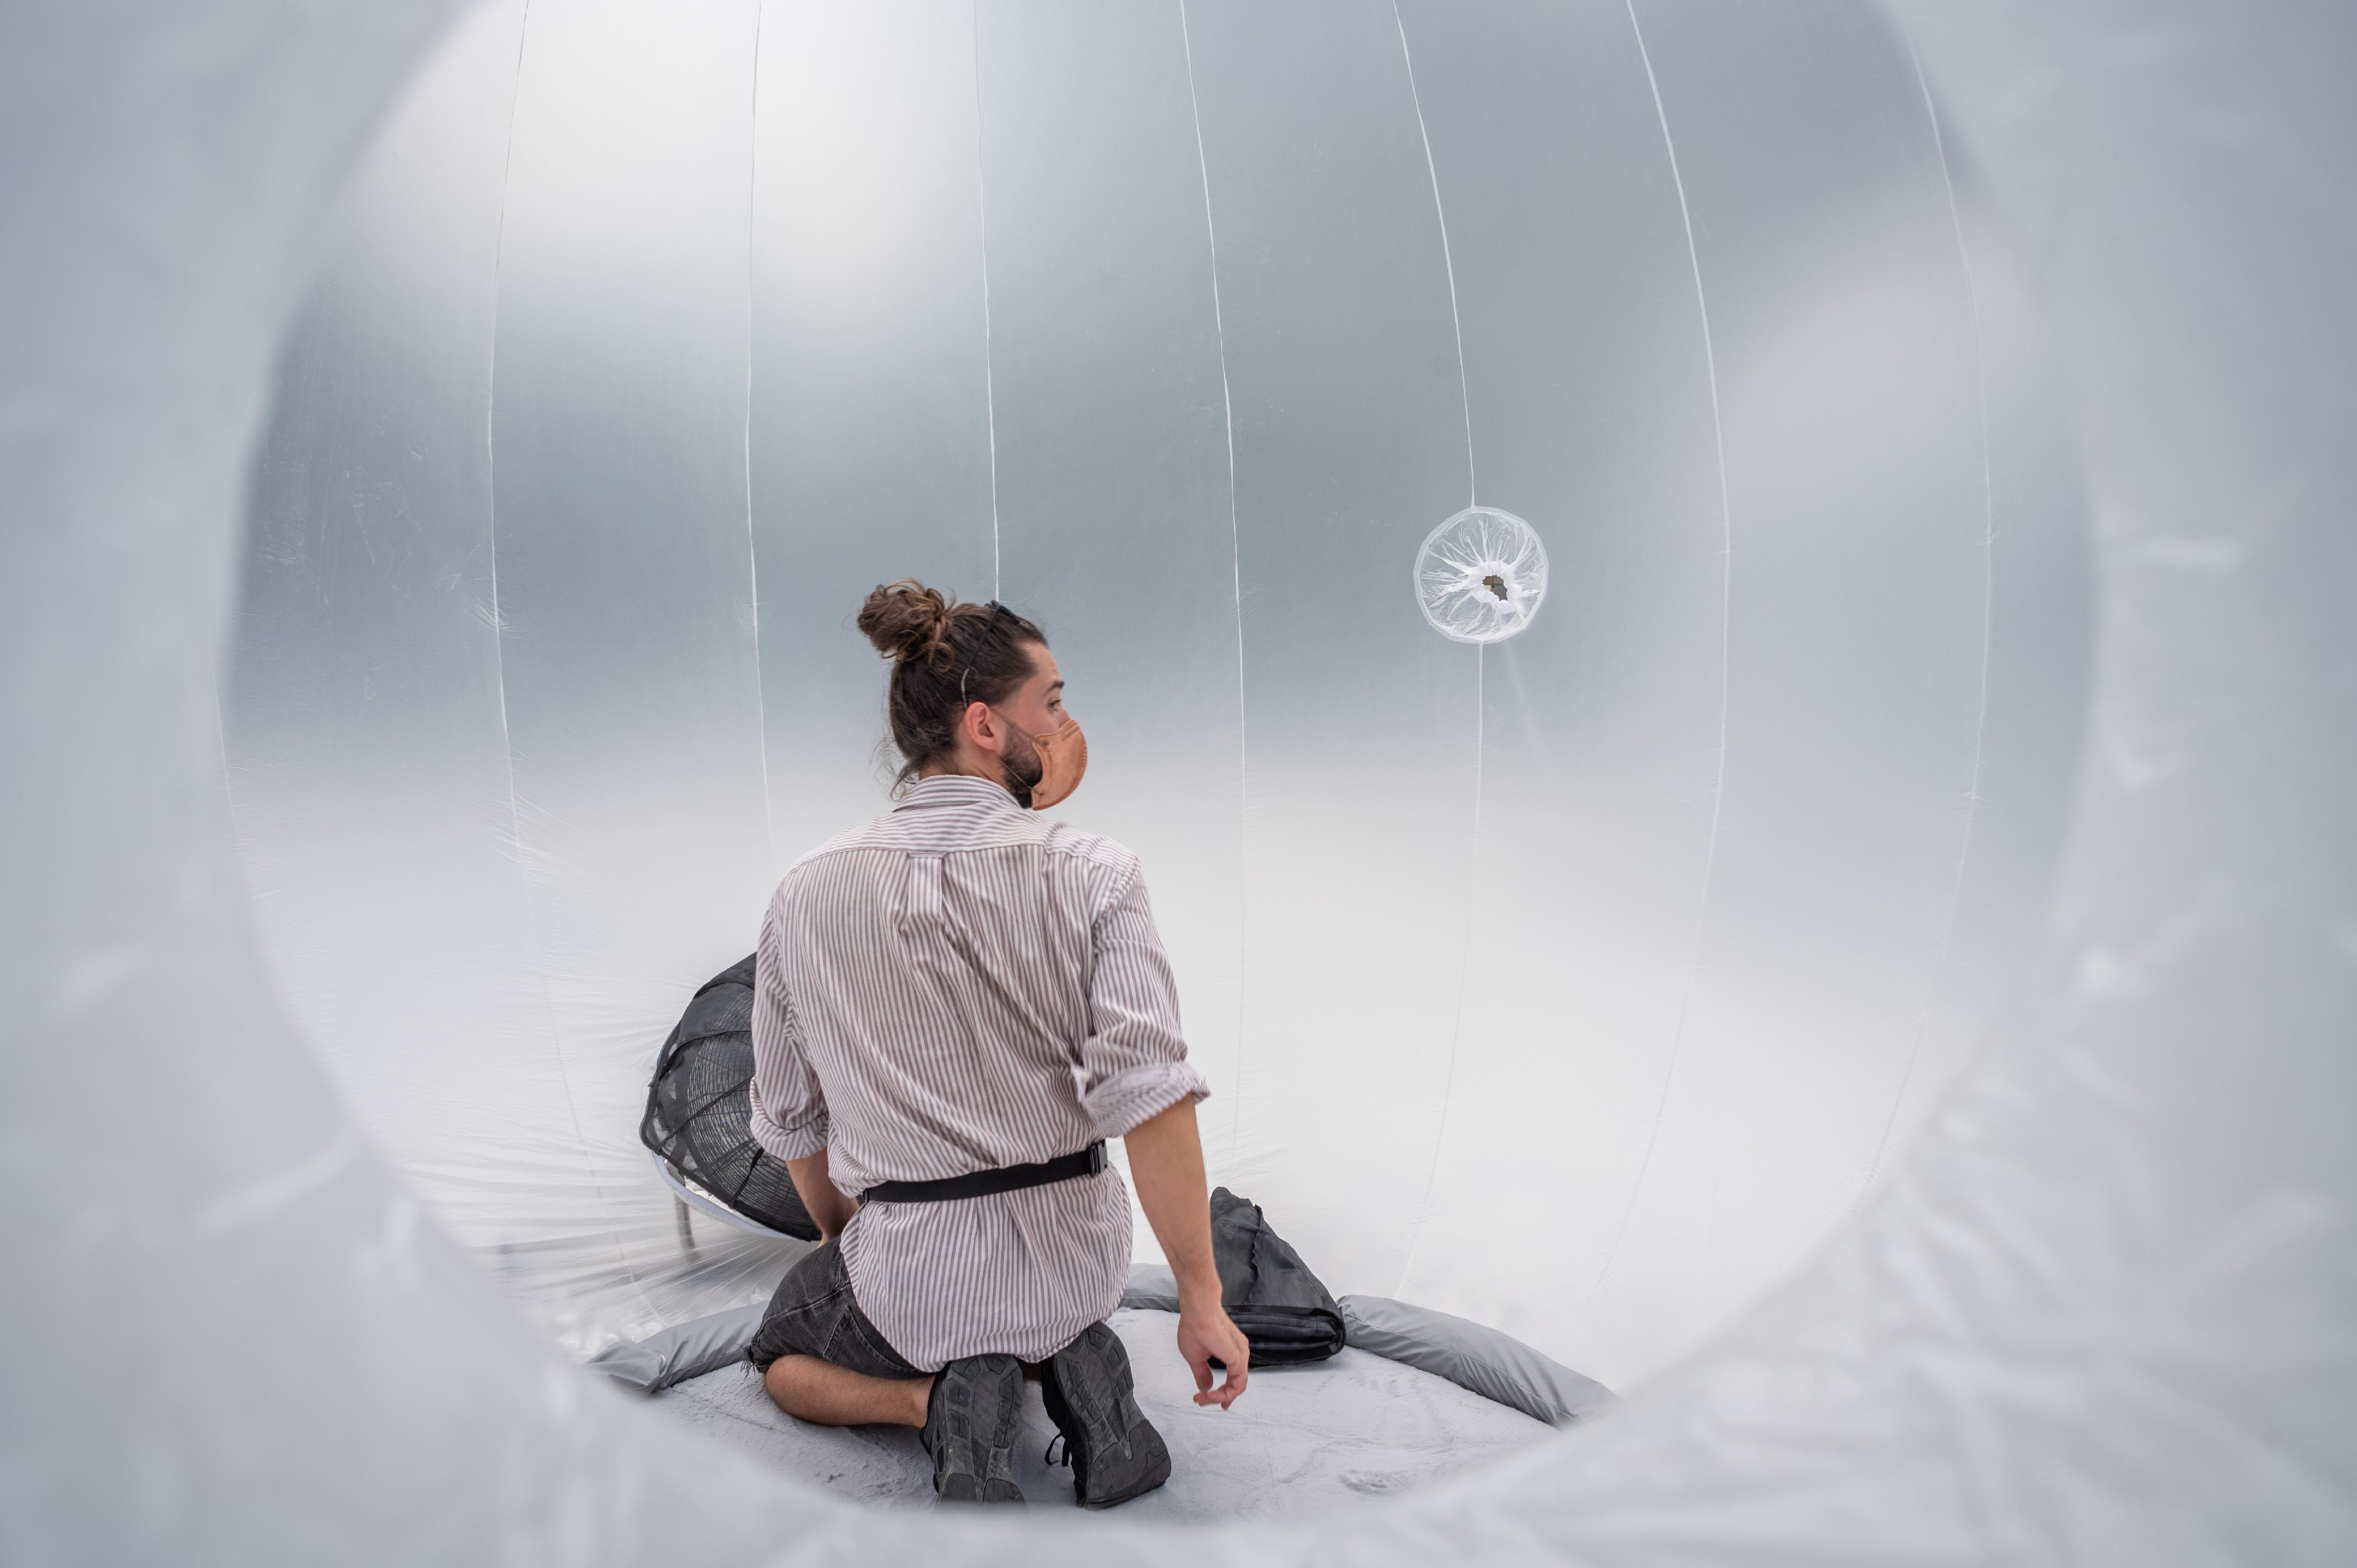 油街實現十一月十三日（星期日）起展出互動裝置《－無－塵室》，參觀者可入內感受沒有空氣污染環境下的呼吸體驗。圖示裝置創作者奧地利藝術家及建築師Adam Hudec。